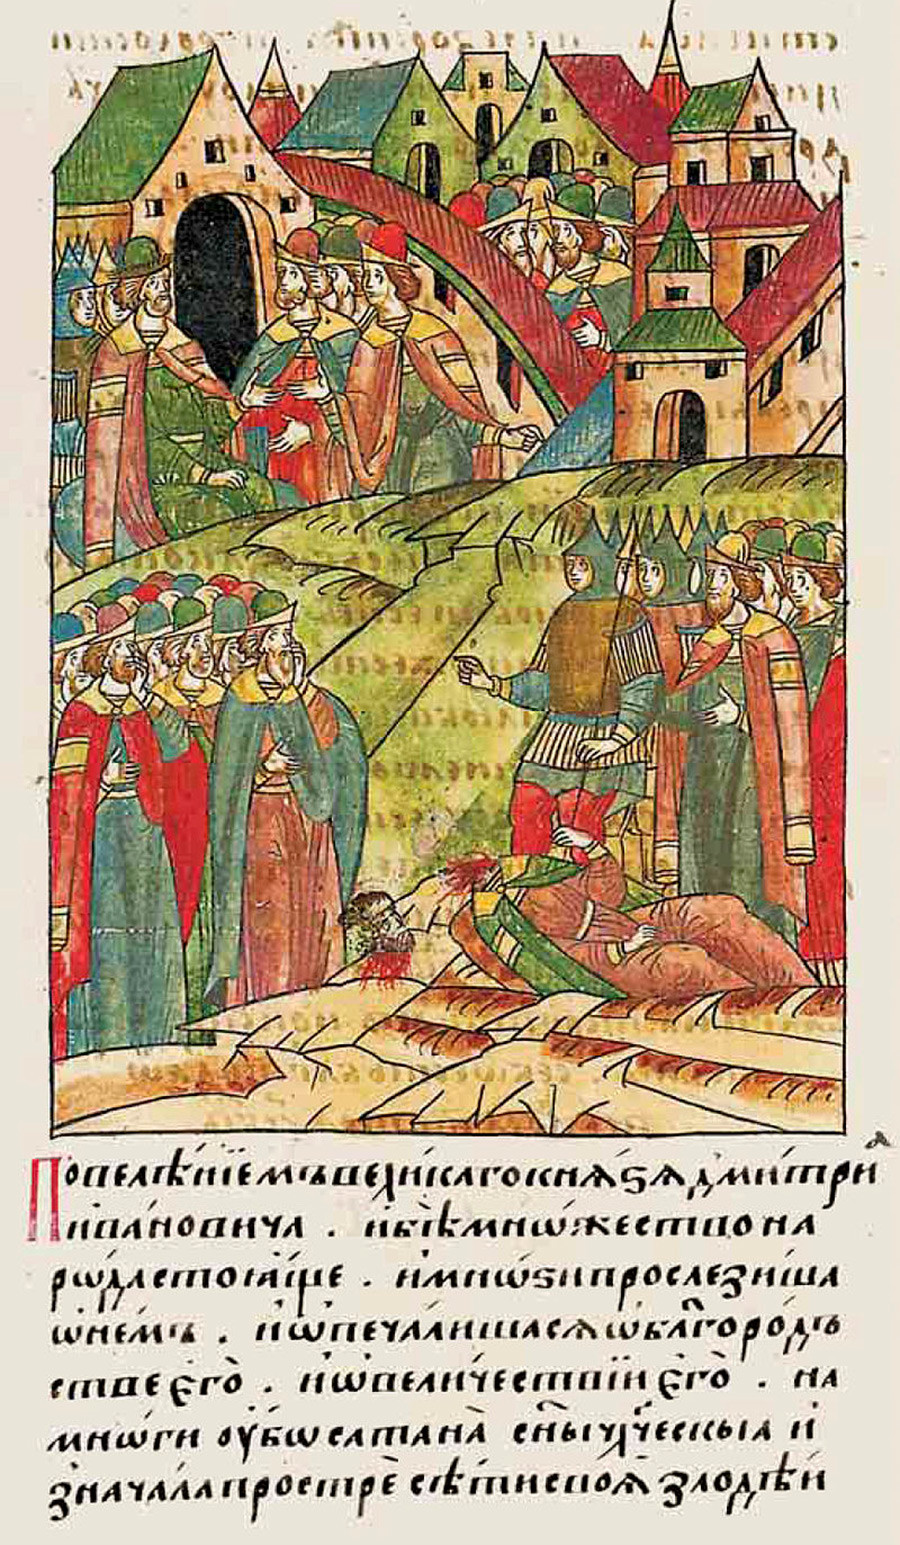 Öffentliche Hinrichtung im mittelalterlichen Russland